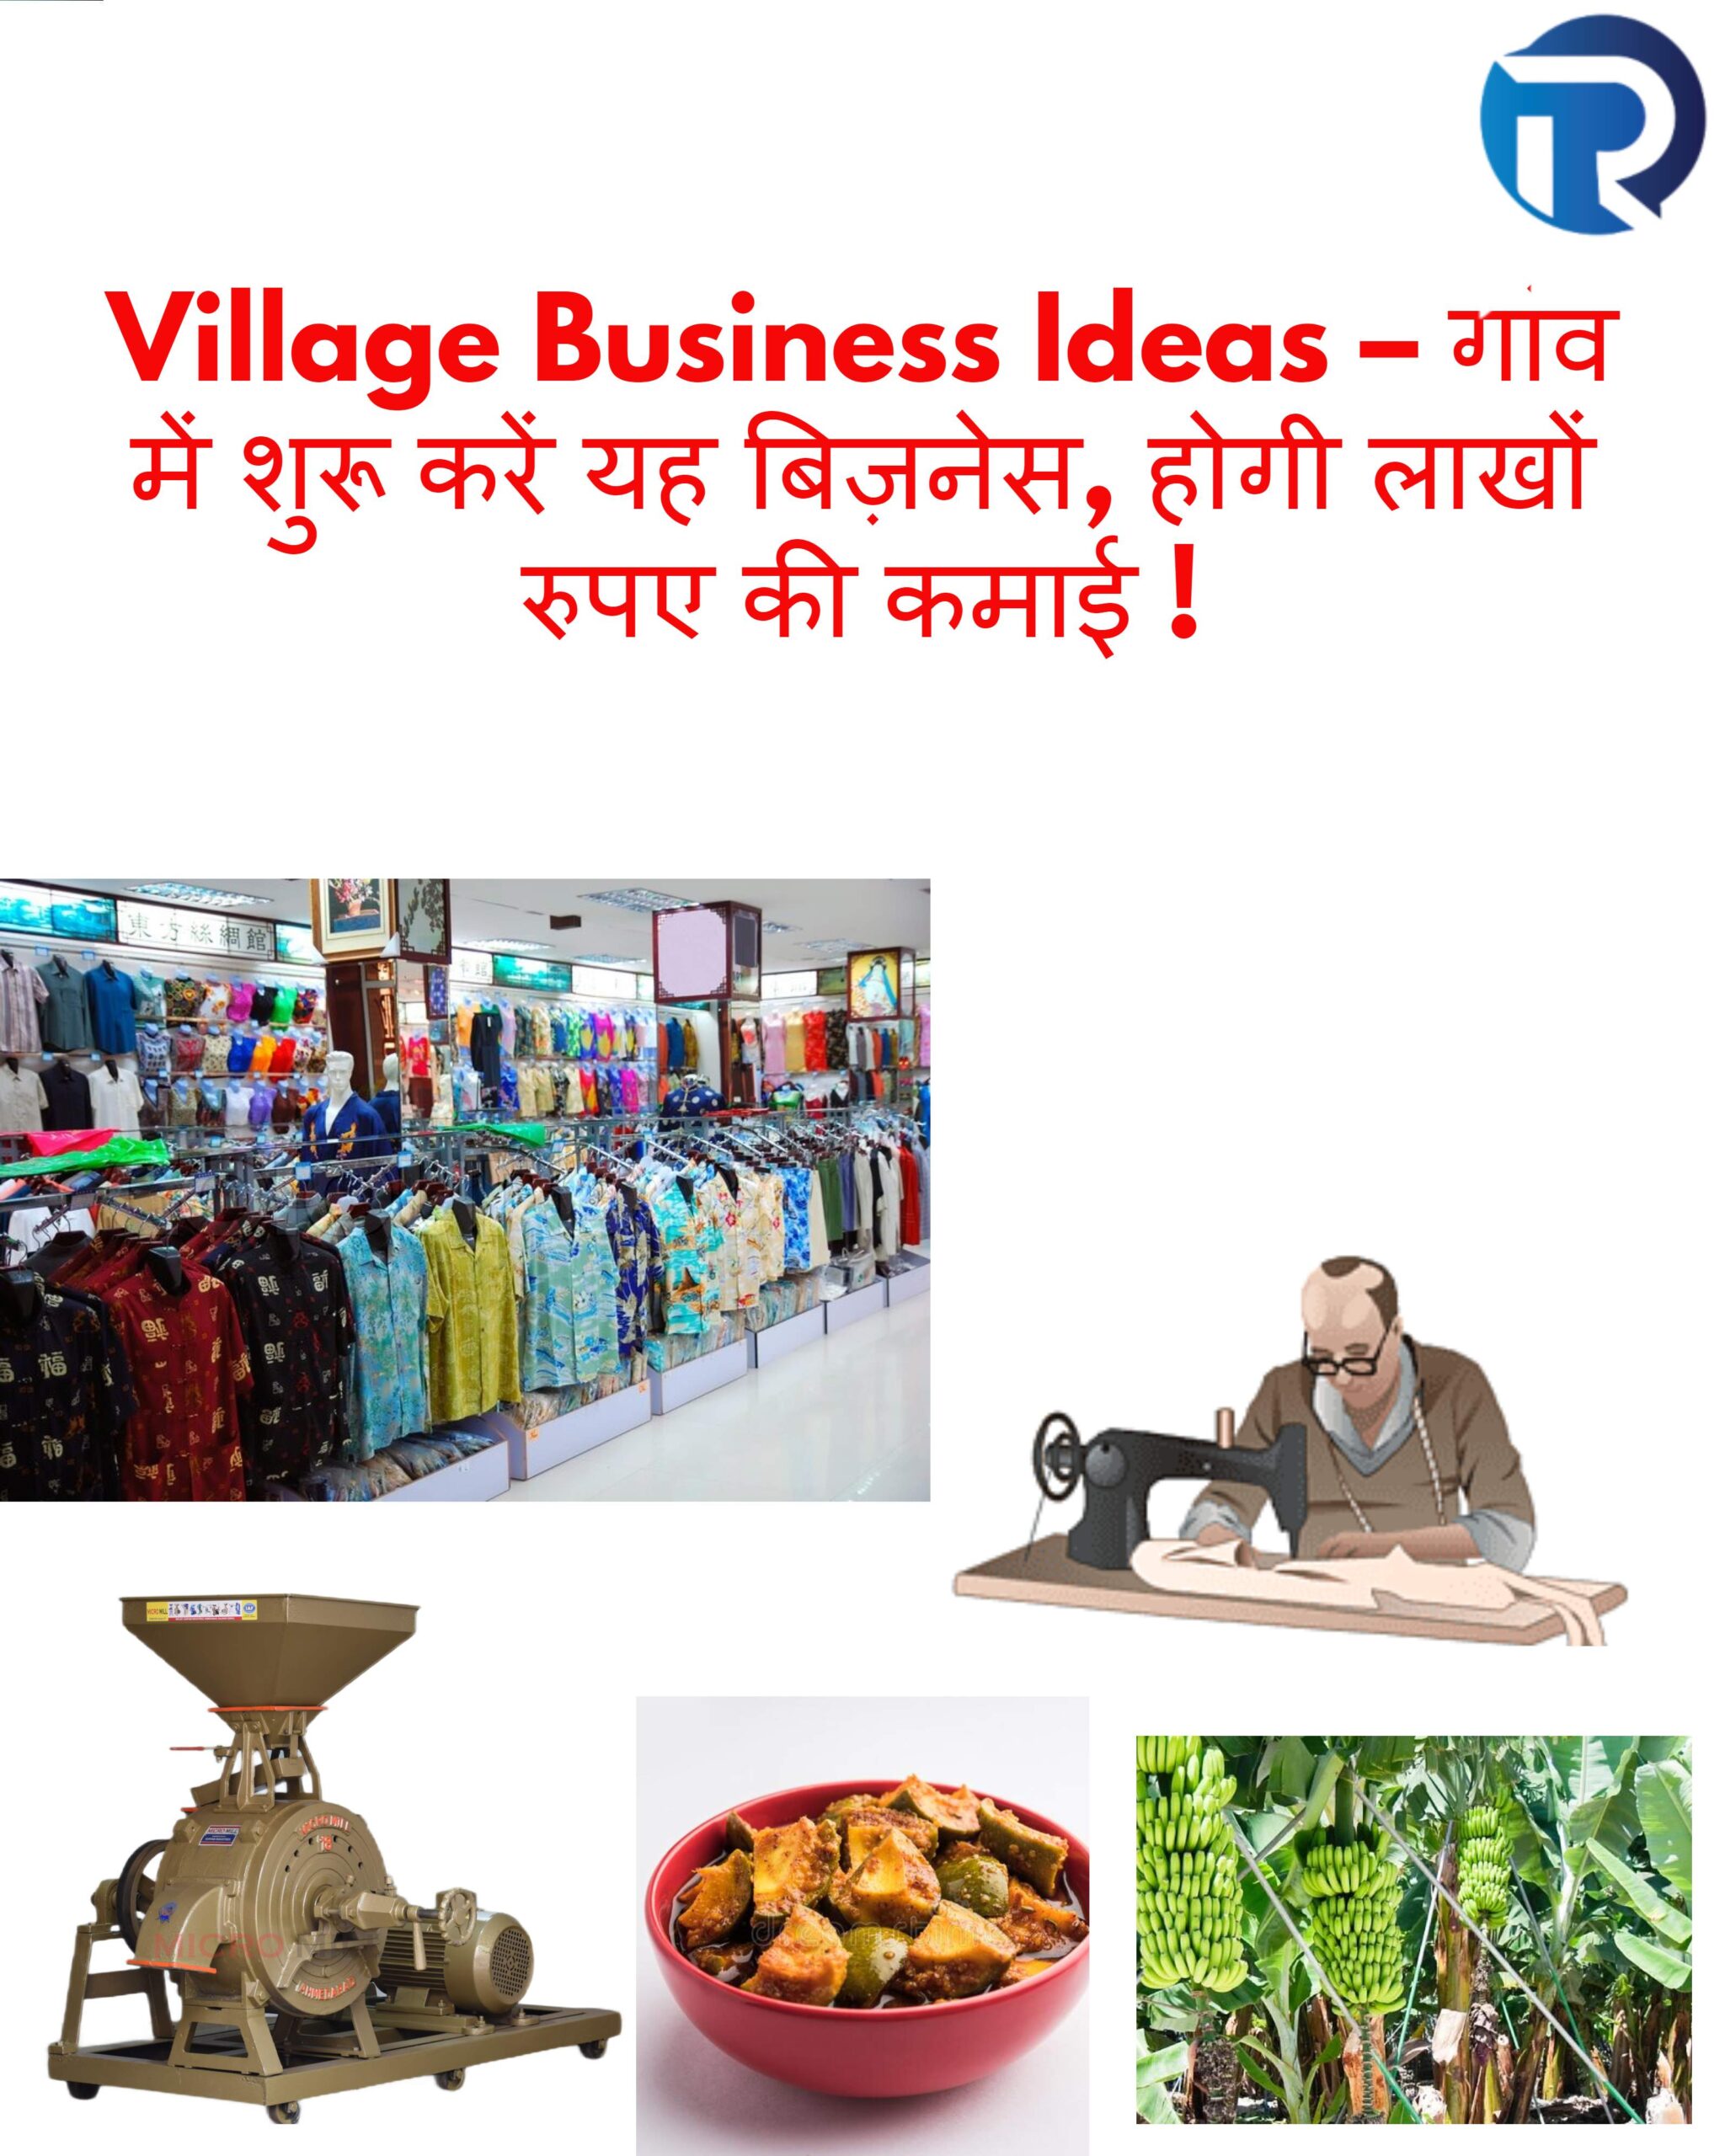 Village Business Ideas – गांव में शुरू करें यह बिज़नेस, होगी लाखों रुपए की कमाई !